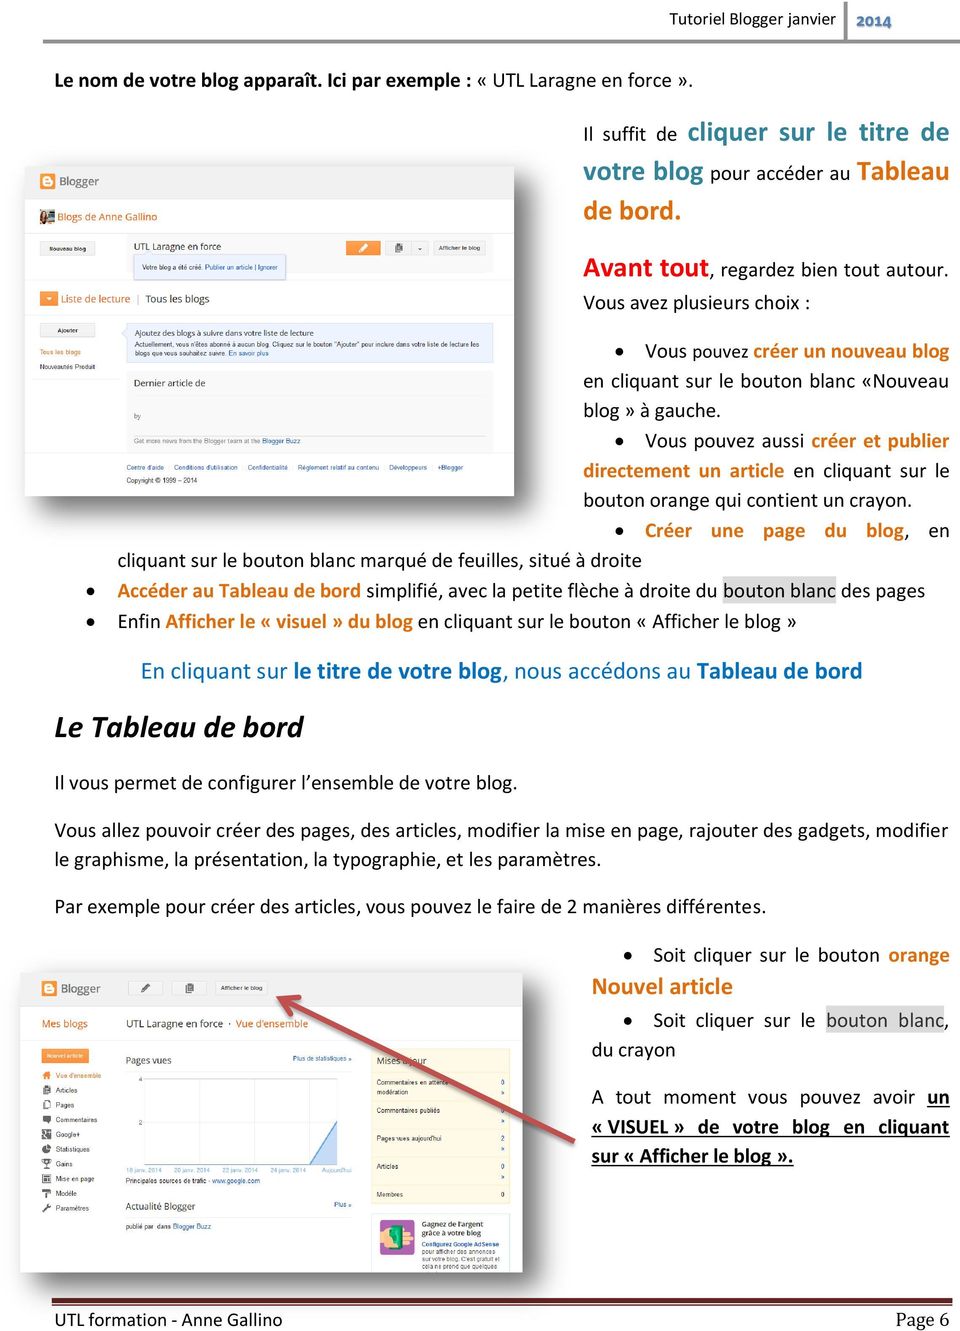 Vous pouvez aussi créer et publier directement un article en cliquant sur le bouton orange qui contient un crayon.